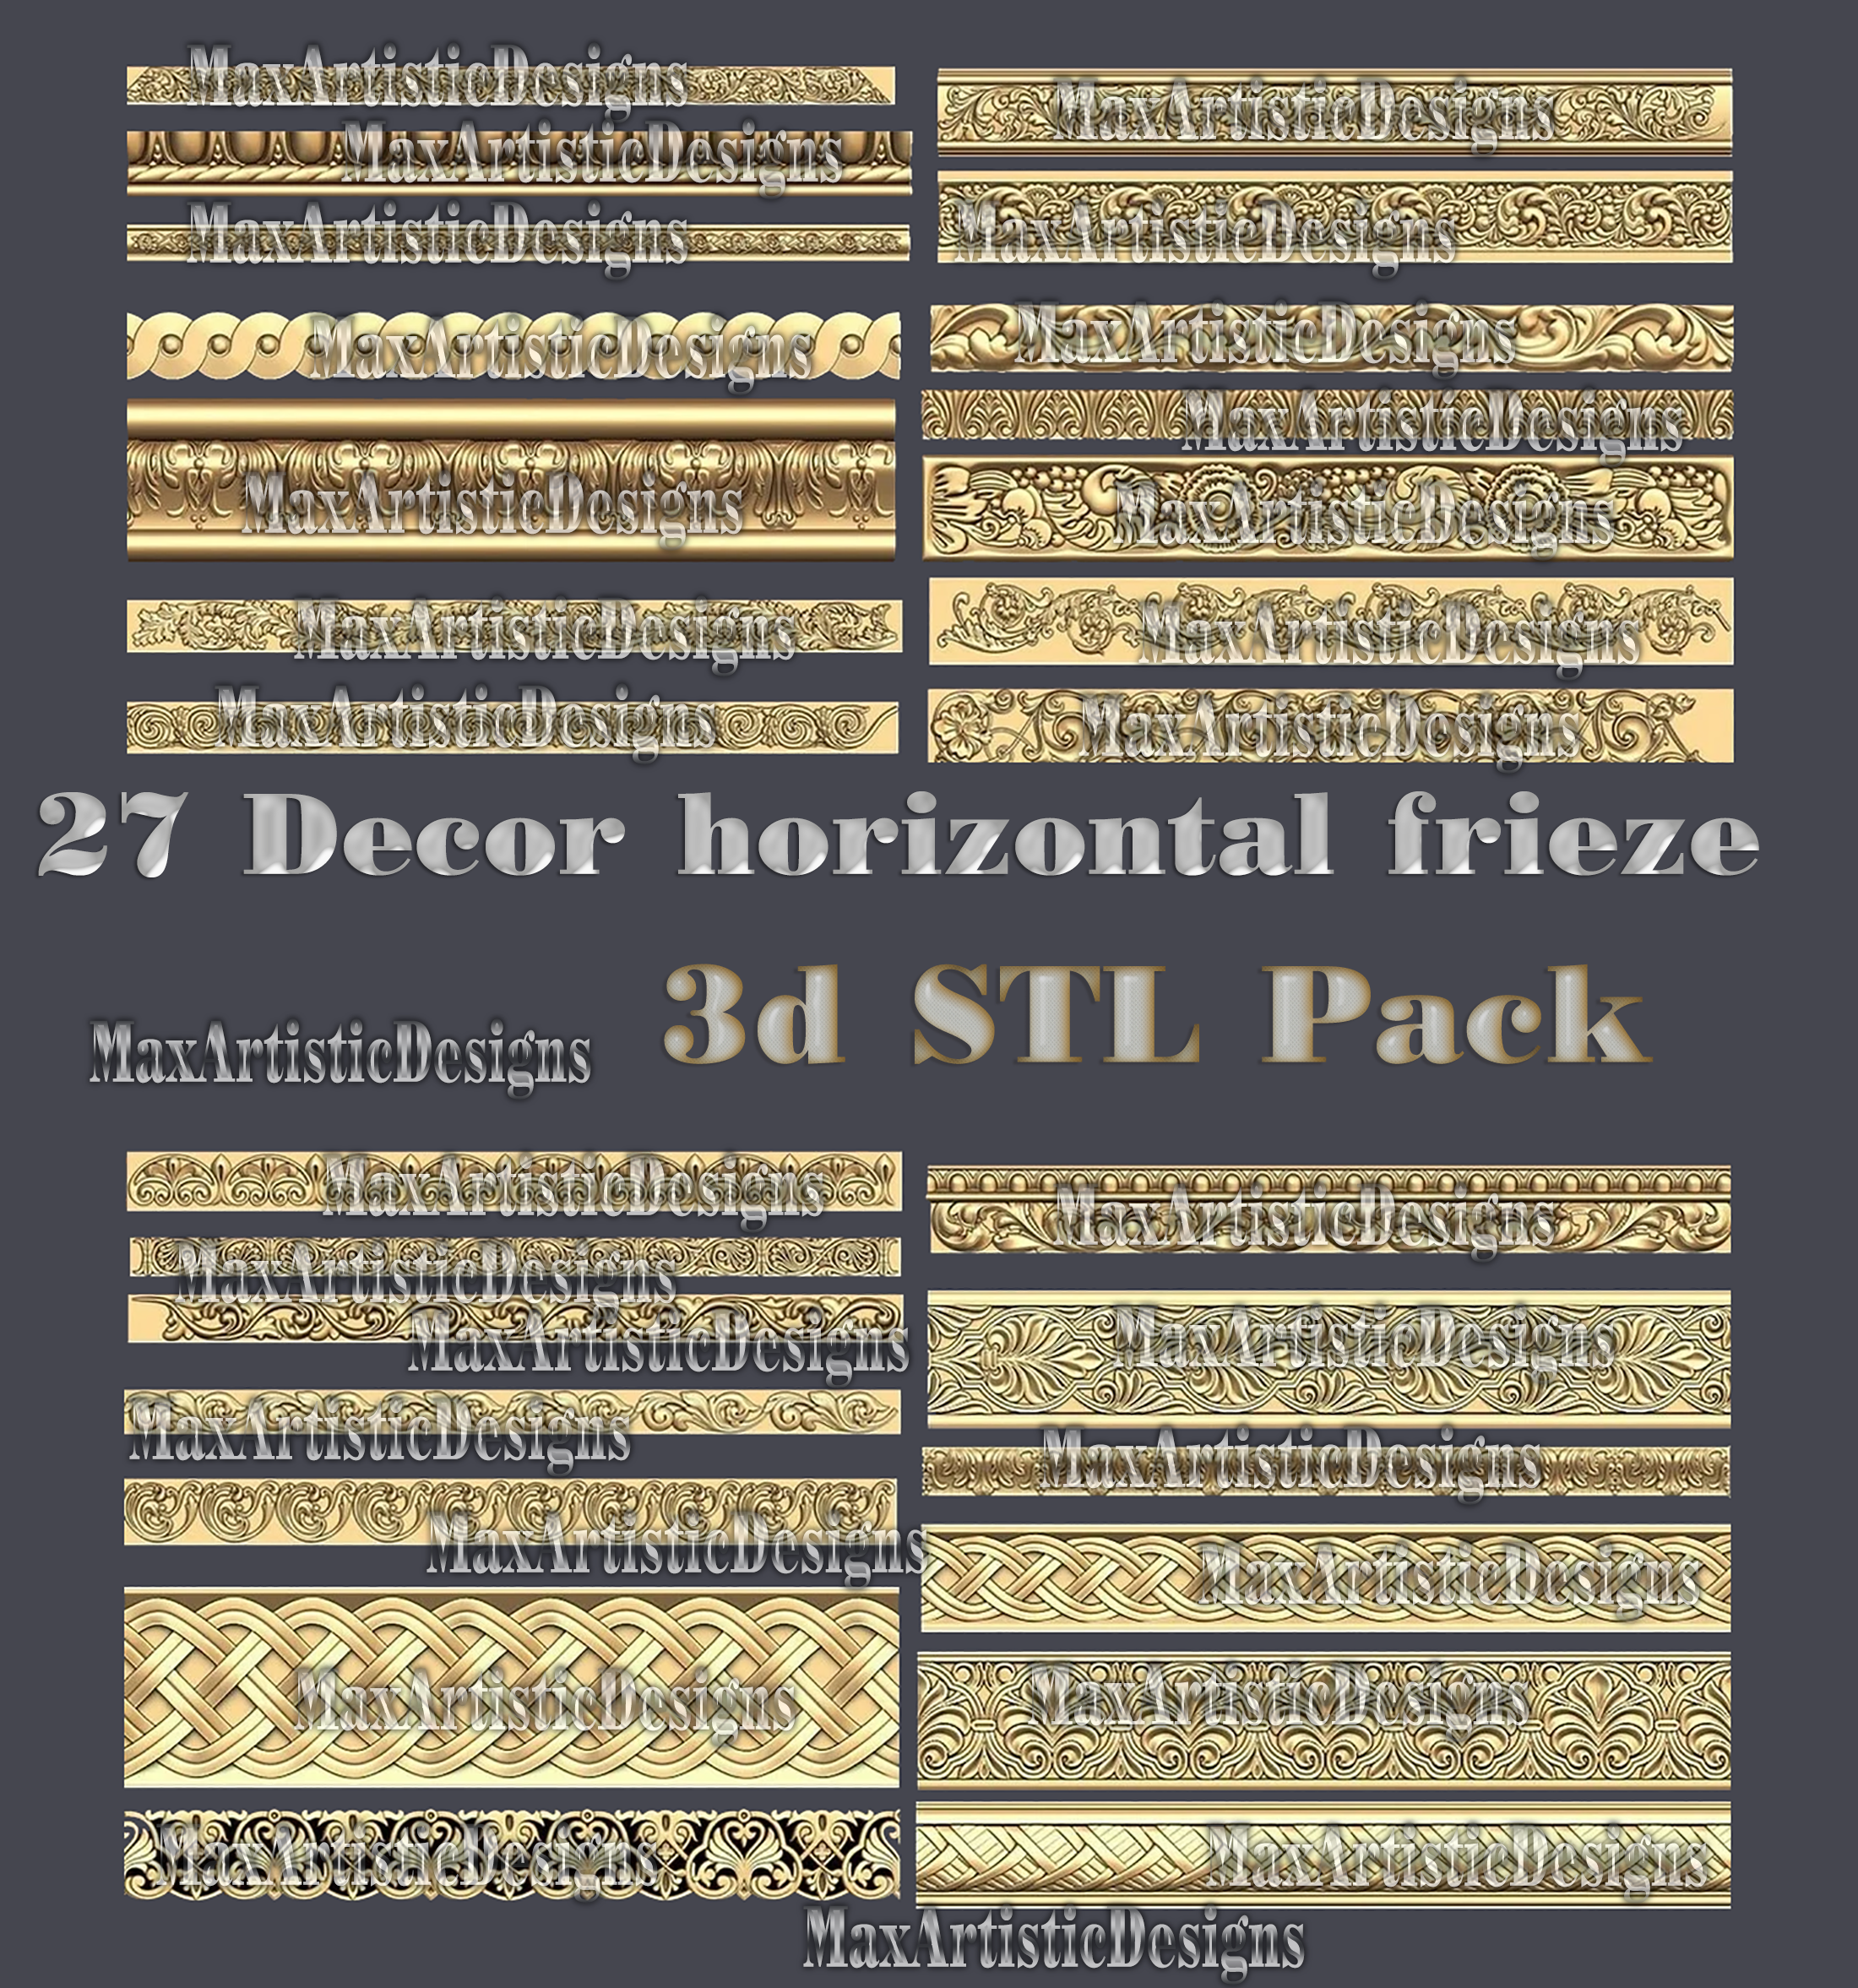 27 unidades 3D STL modelo para decoración marcos de friso horizontal modelo 3d bajorrelieve para grabar modelos tallados